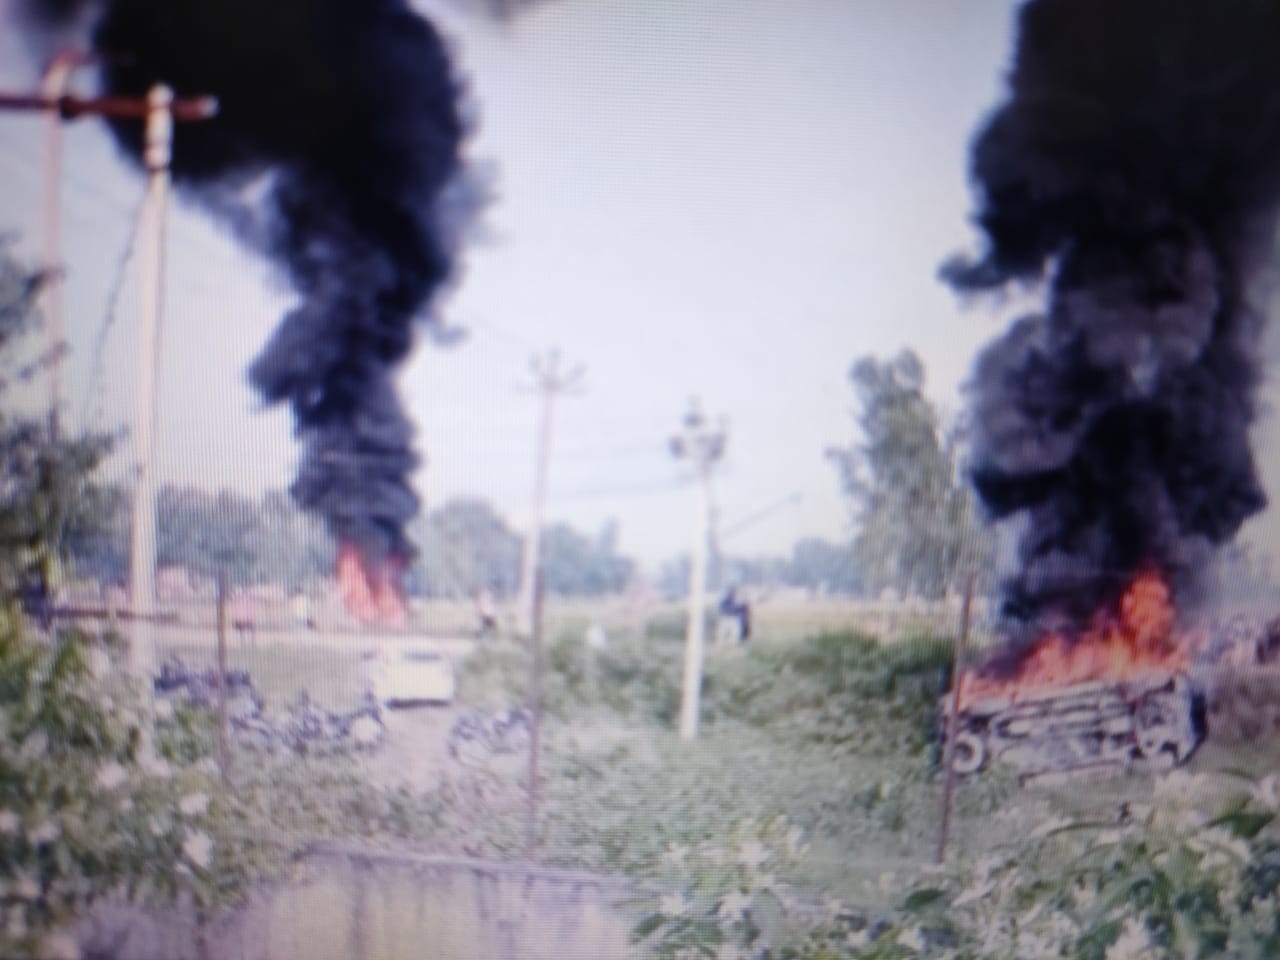 लखीमपुर हिंसा मामले में मृत दो किसानों के परिजनों को चेक सौंपा गया